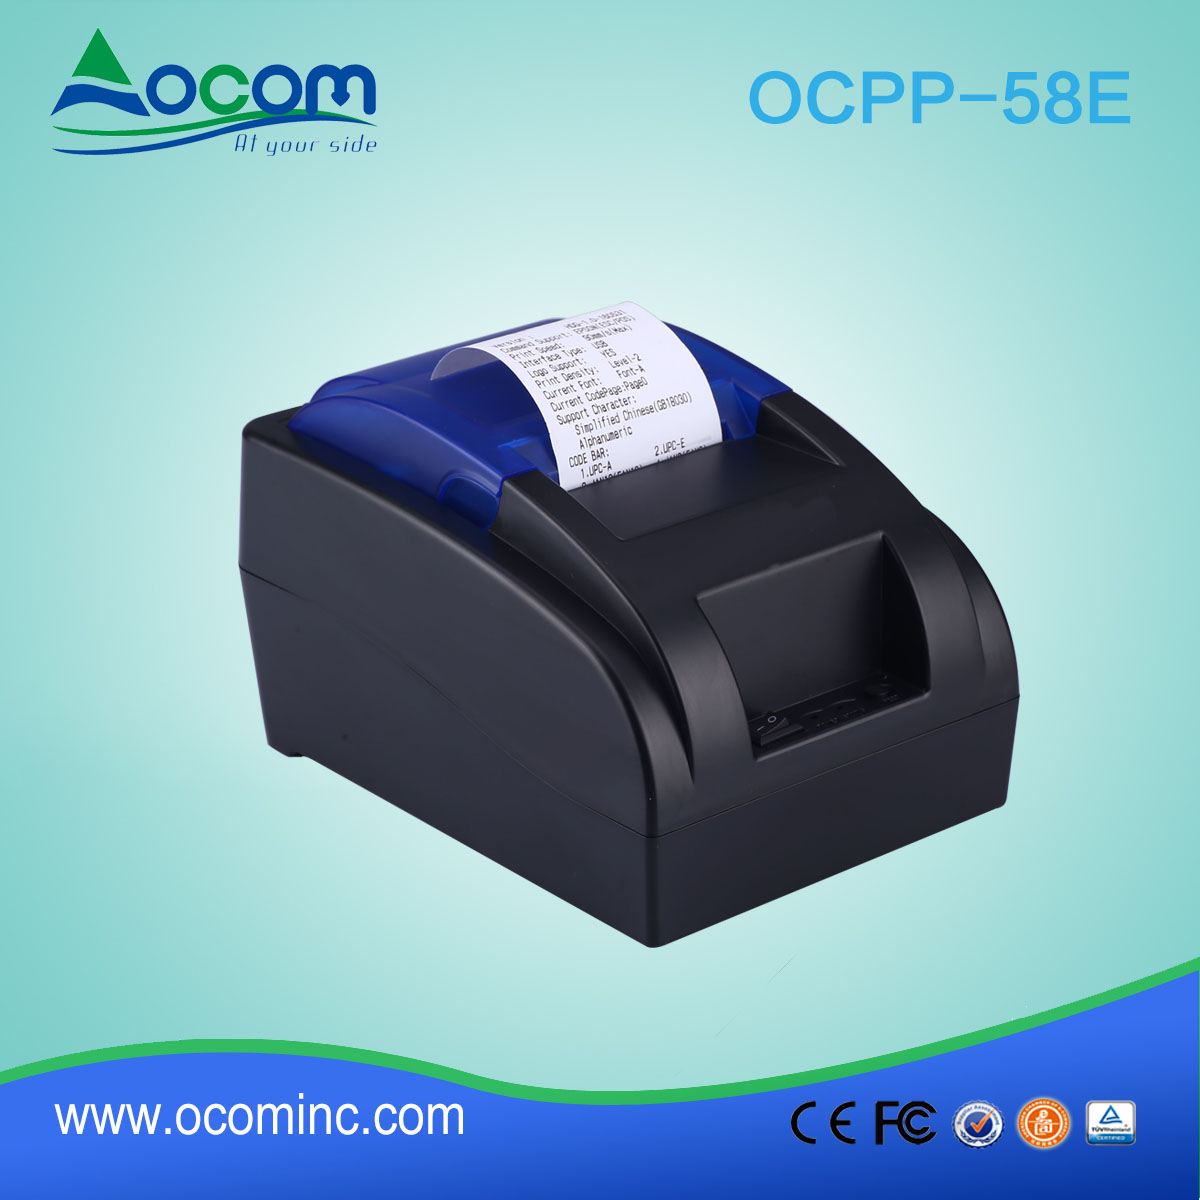 Stampante per ricevute termica 58mm OCPP-58E